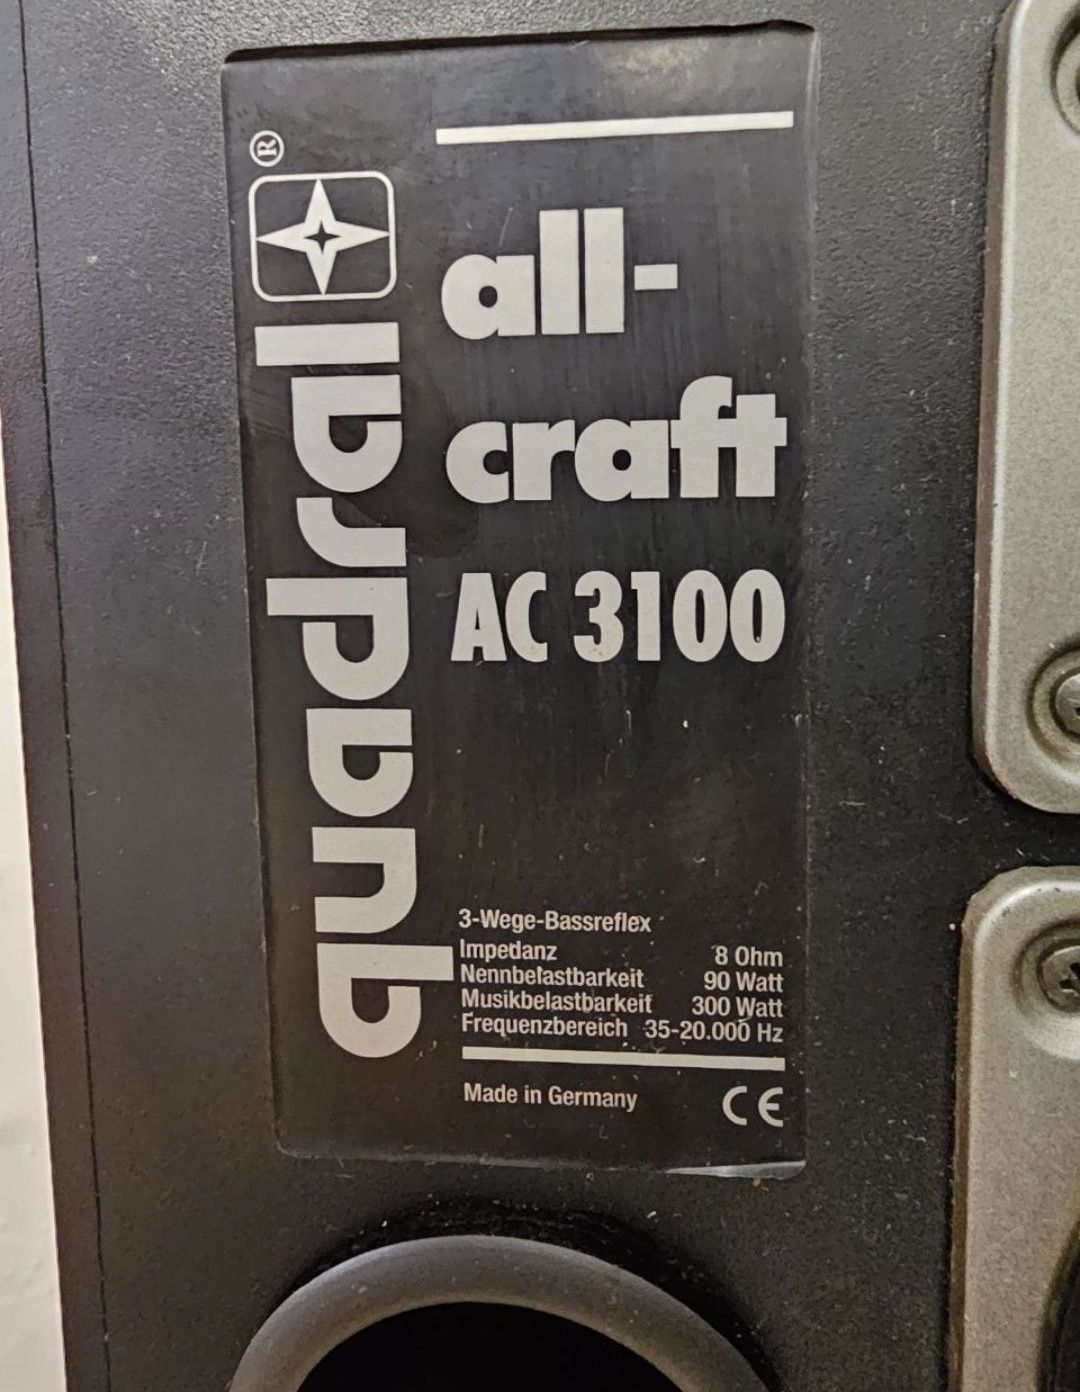 Kolumny Qadral all grafit AC 3100, Akustyka, głośników